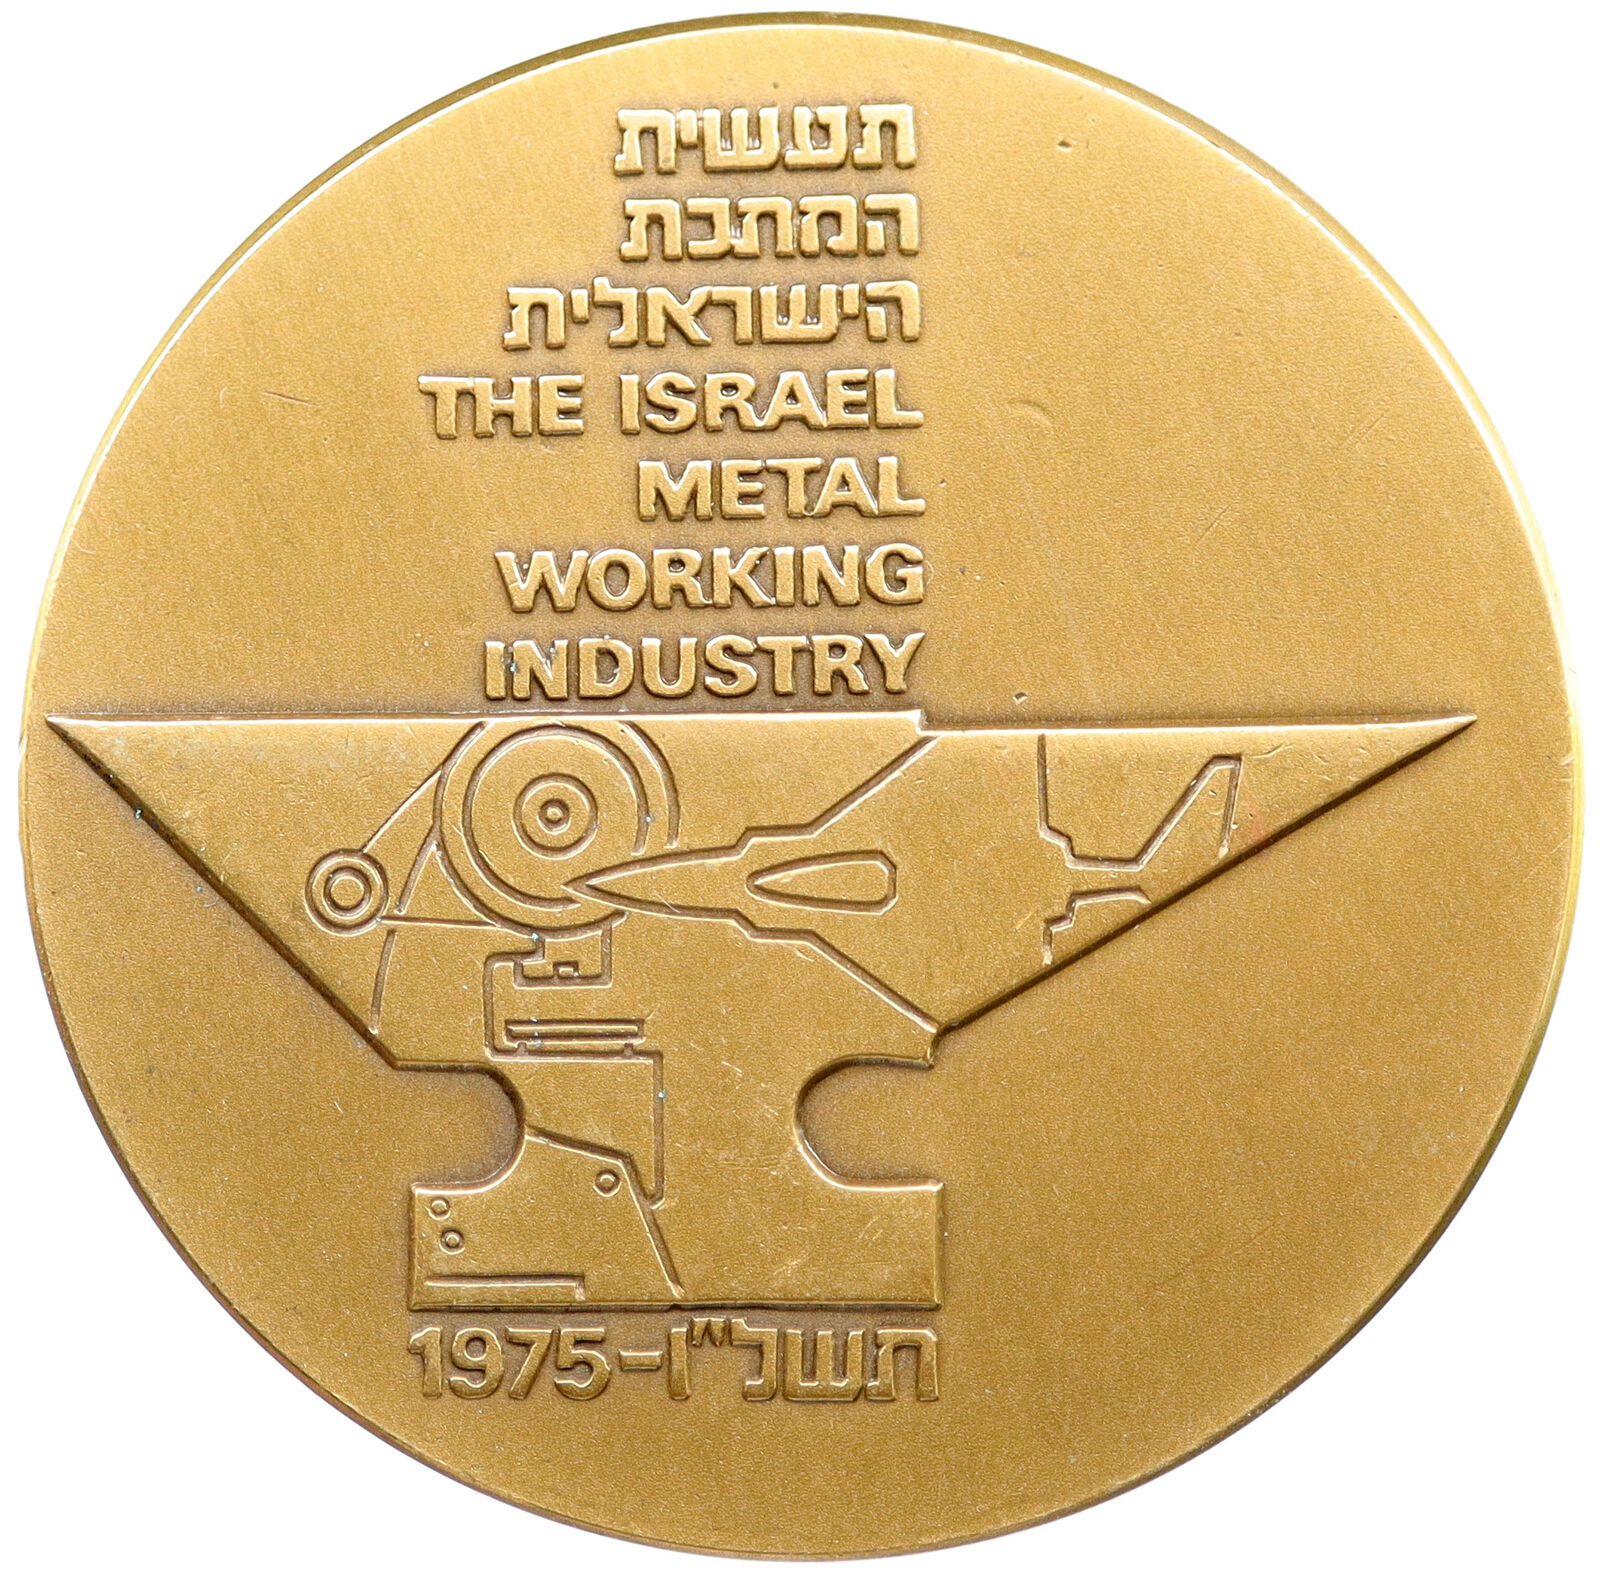 1975 ISRAEL Metal Working COMMERCE INDUSTRY Gears Vintage OLD Medal i115704